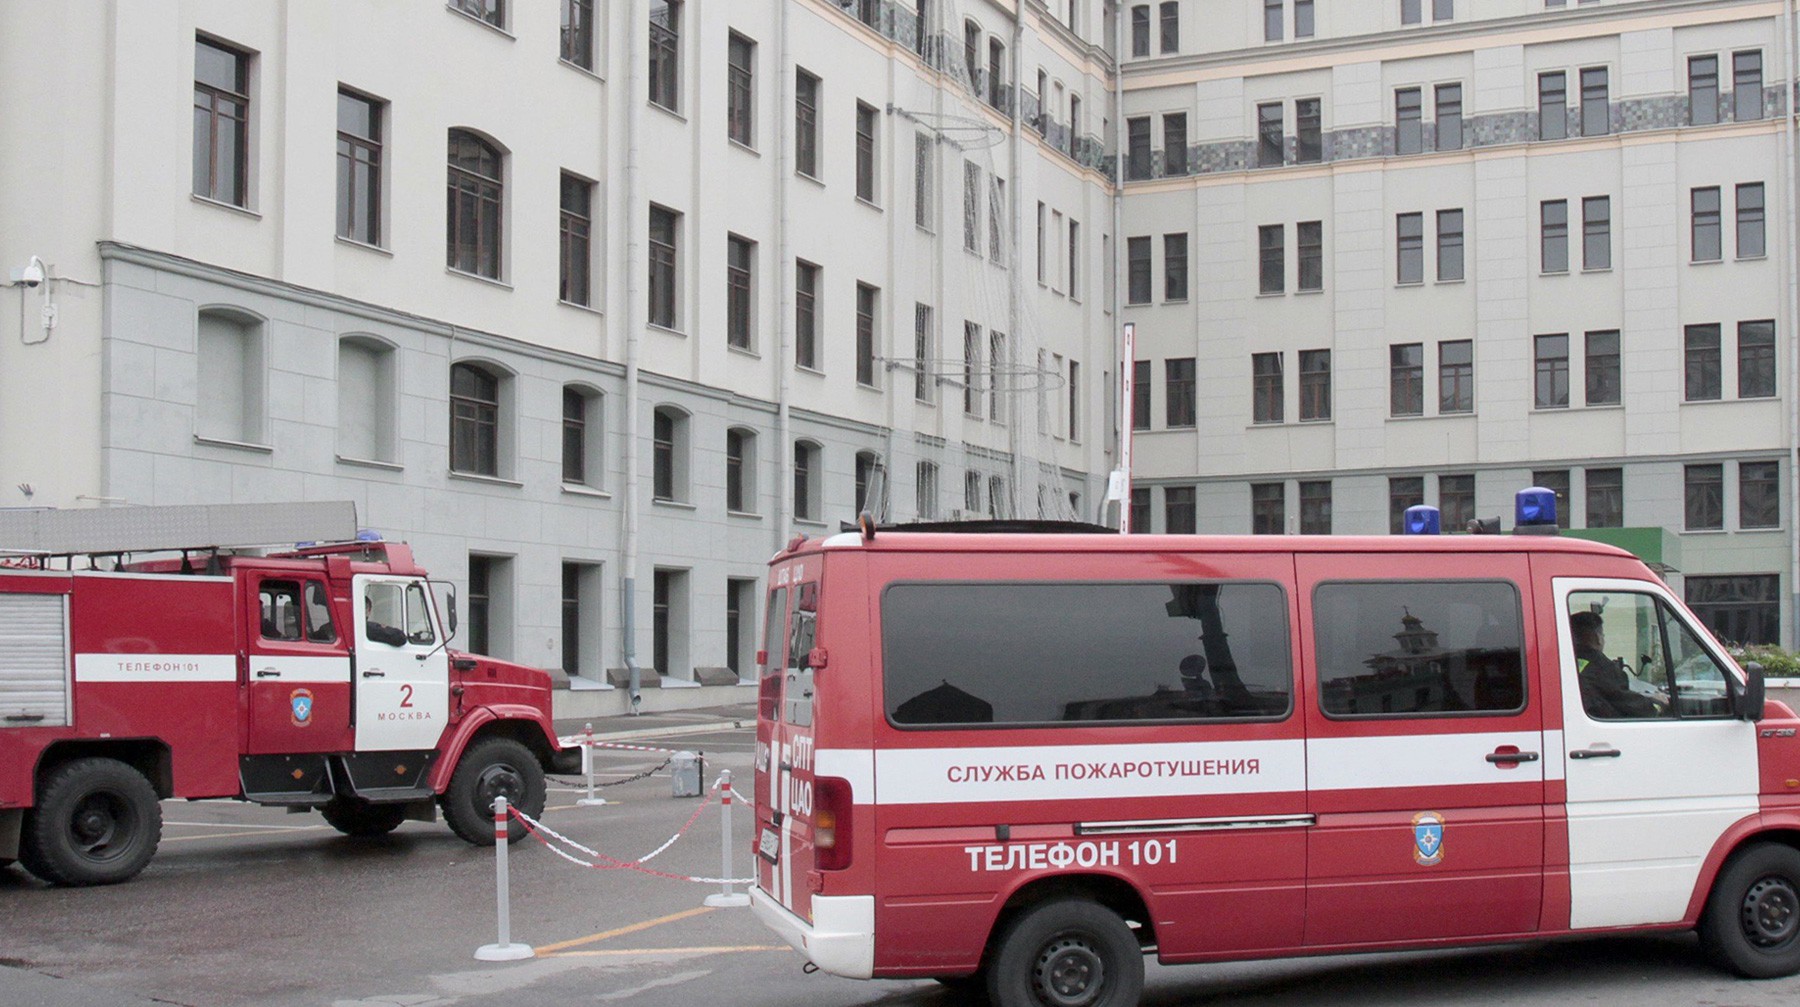 Dailystorm - В Хабаровске эвакуированы школы и больницы из-за сообщений о минировании